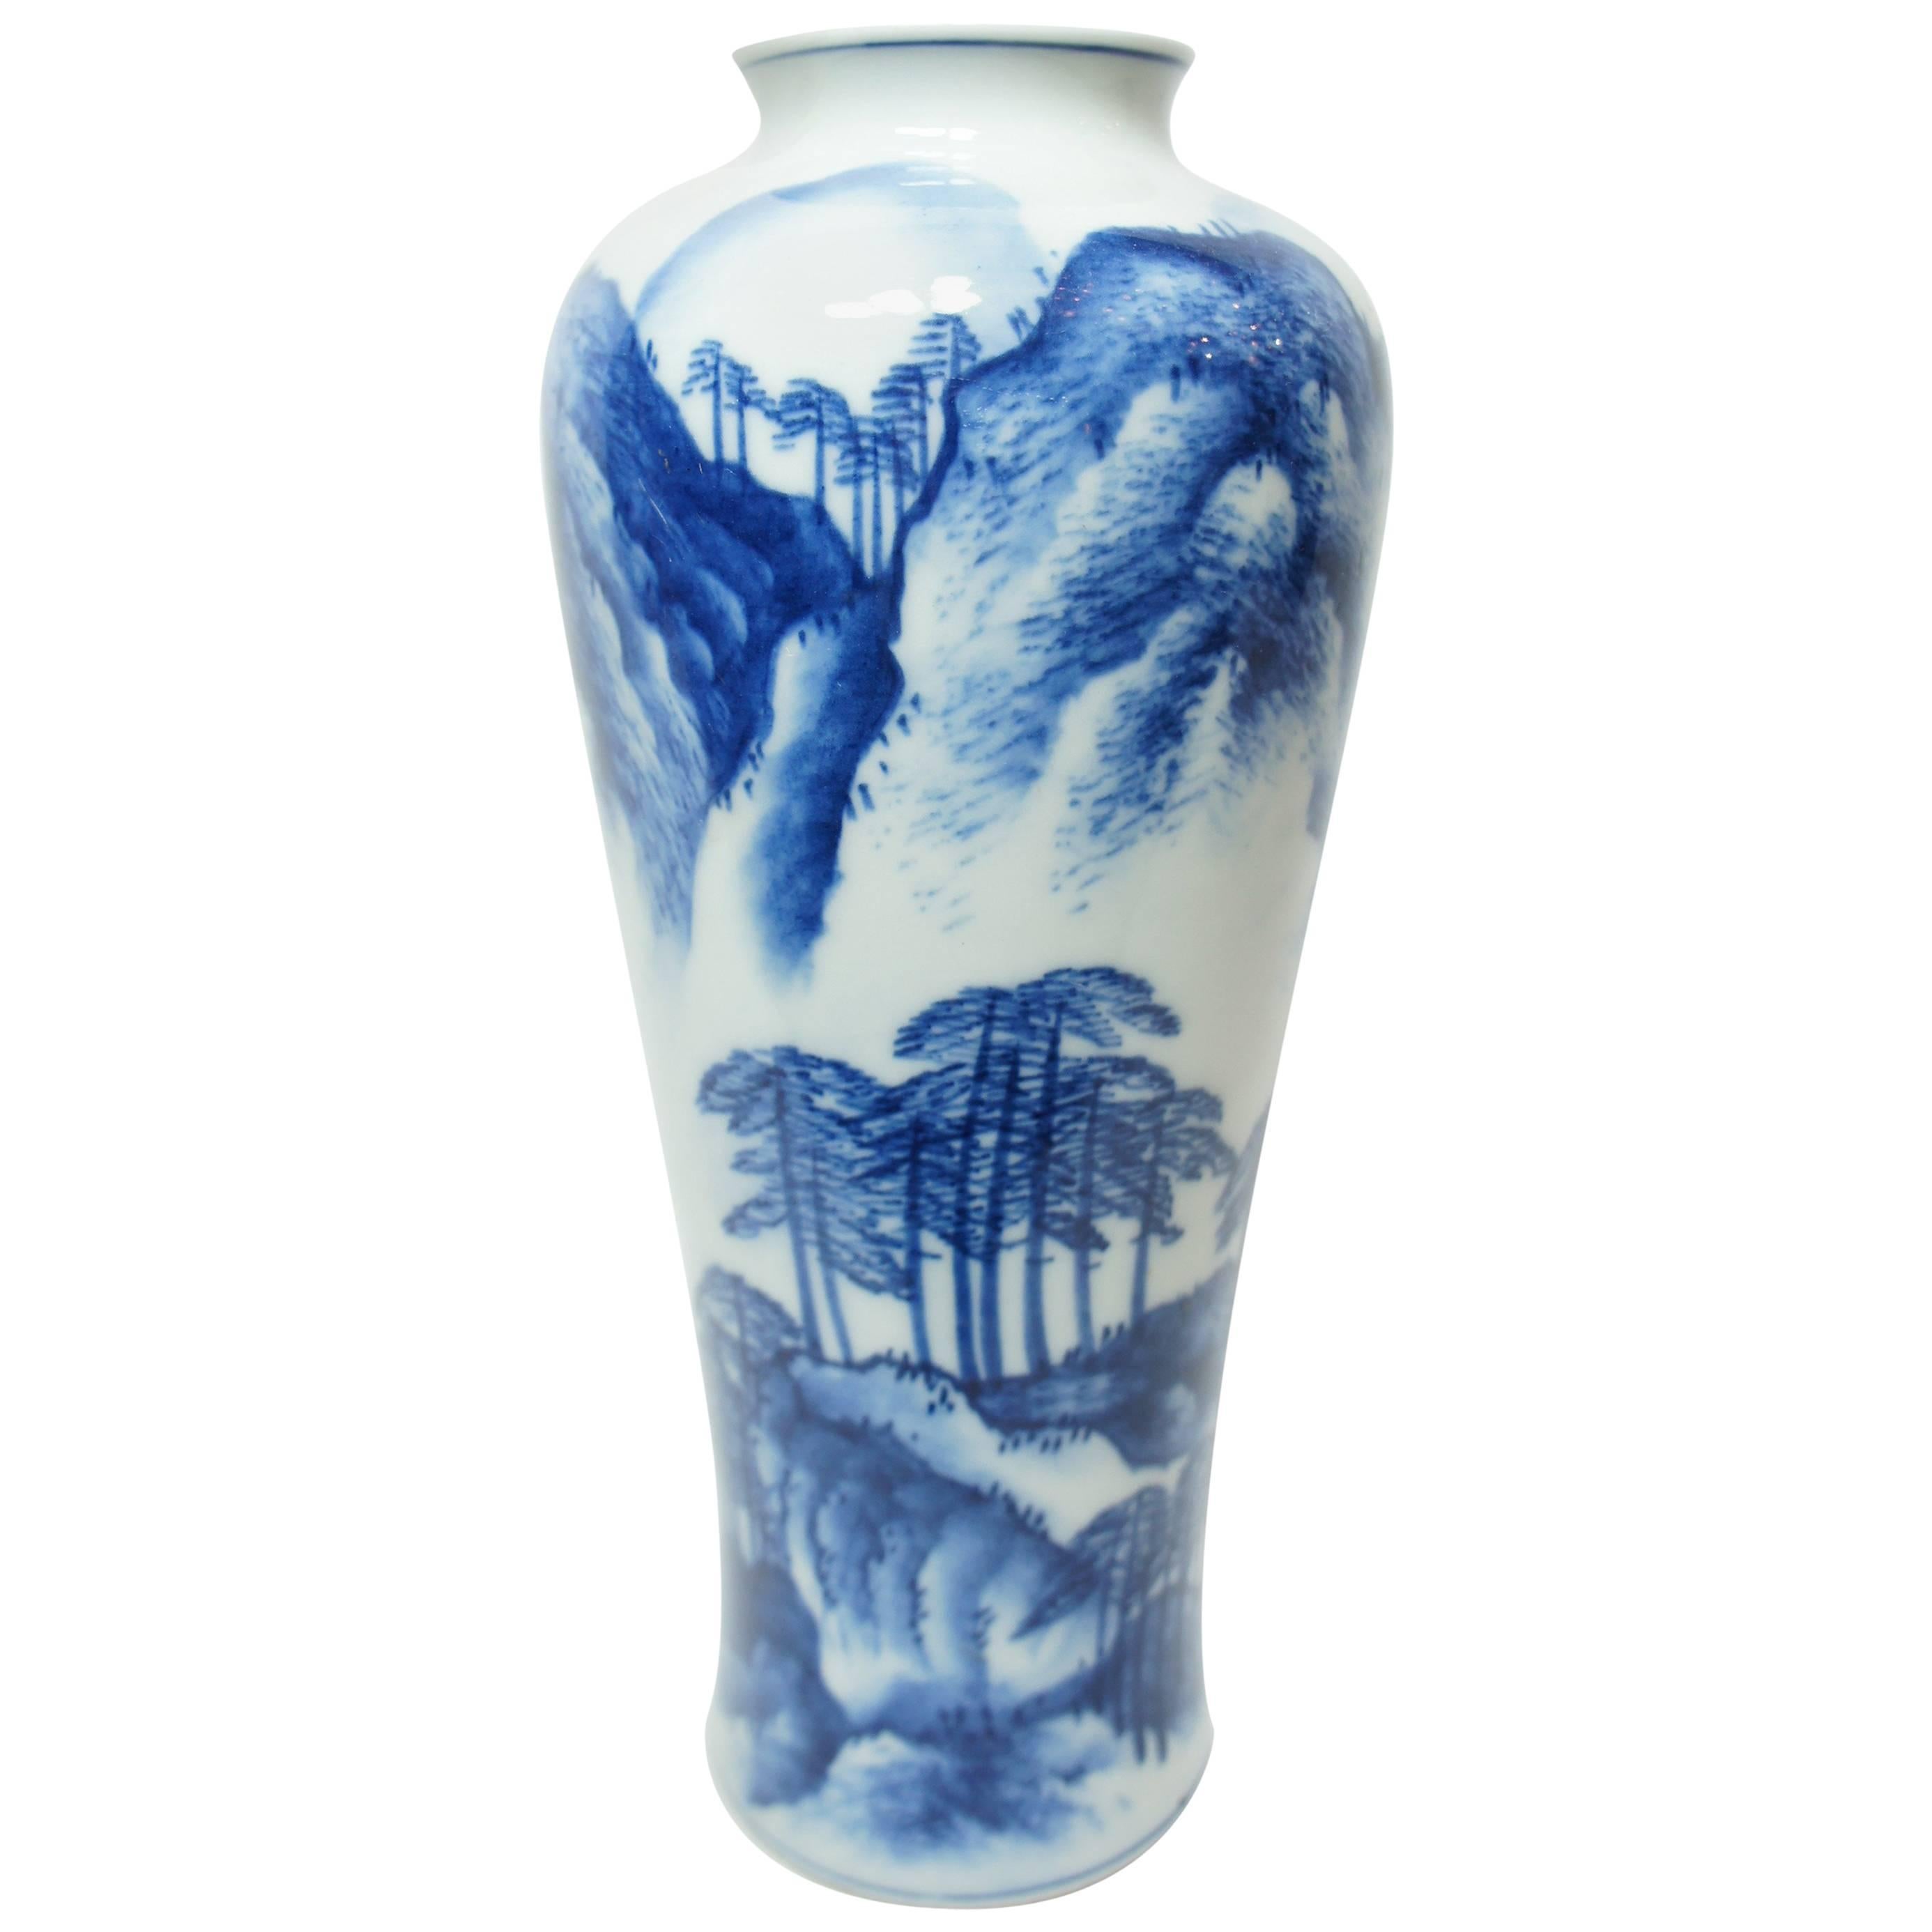 Japanese Indigo Blue Chinese Style Landscape on White Porcelain Imari Vase 1950s